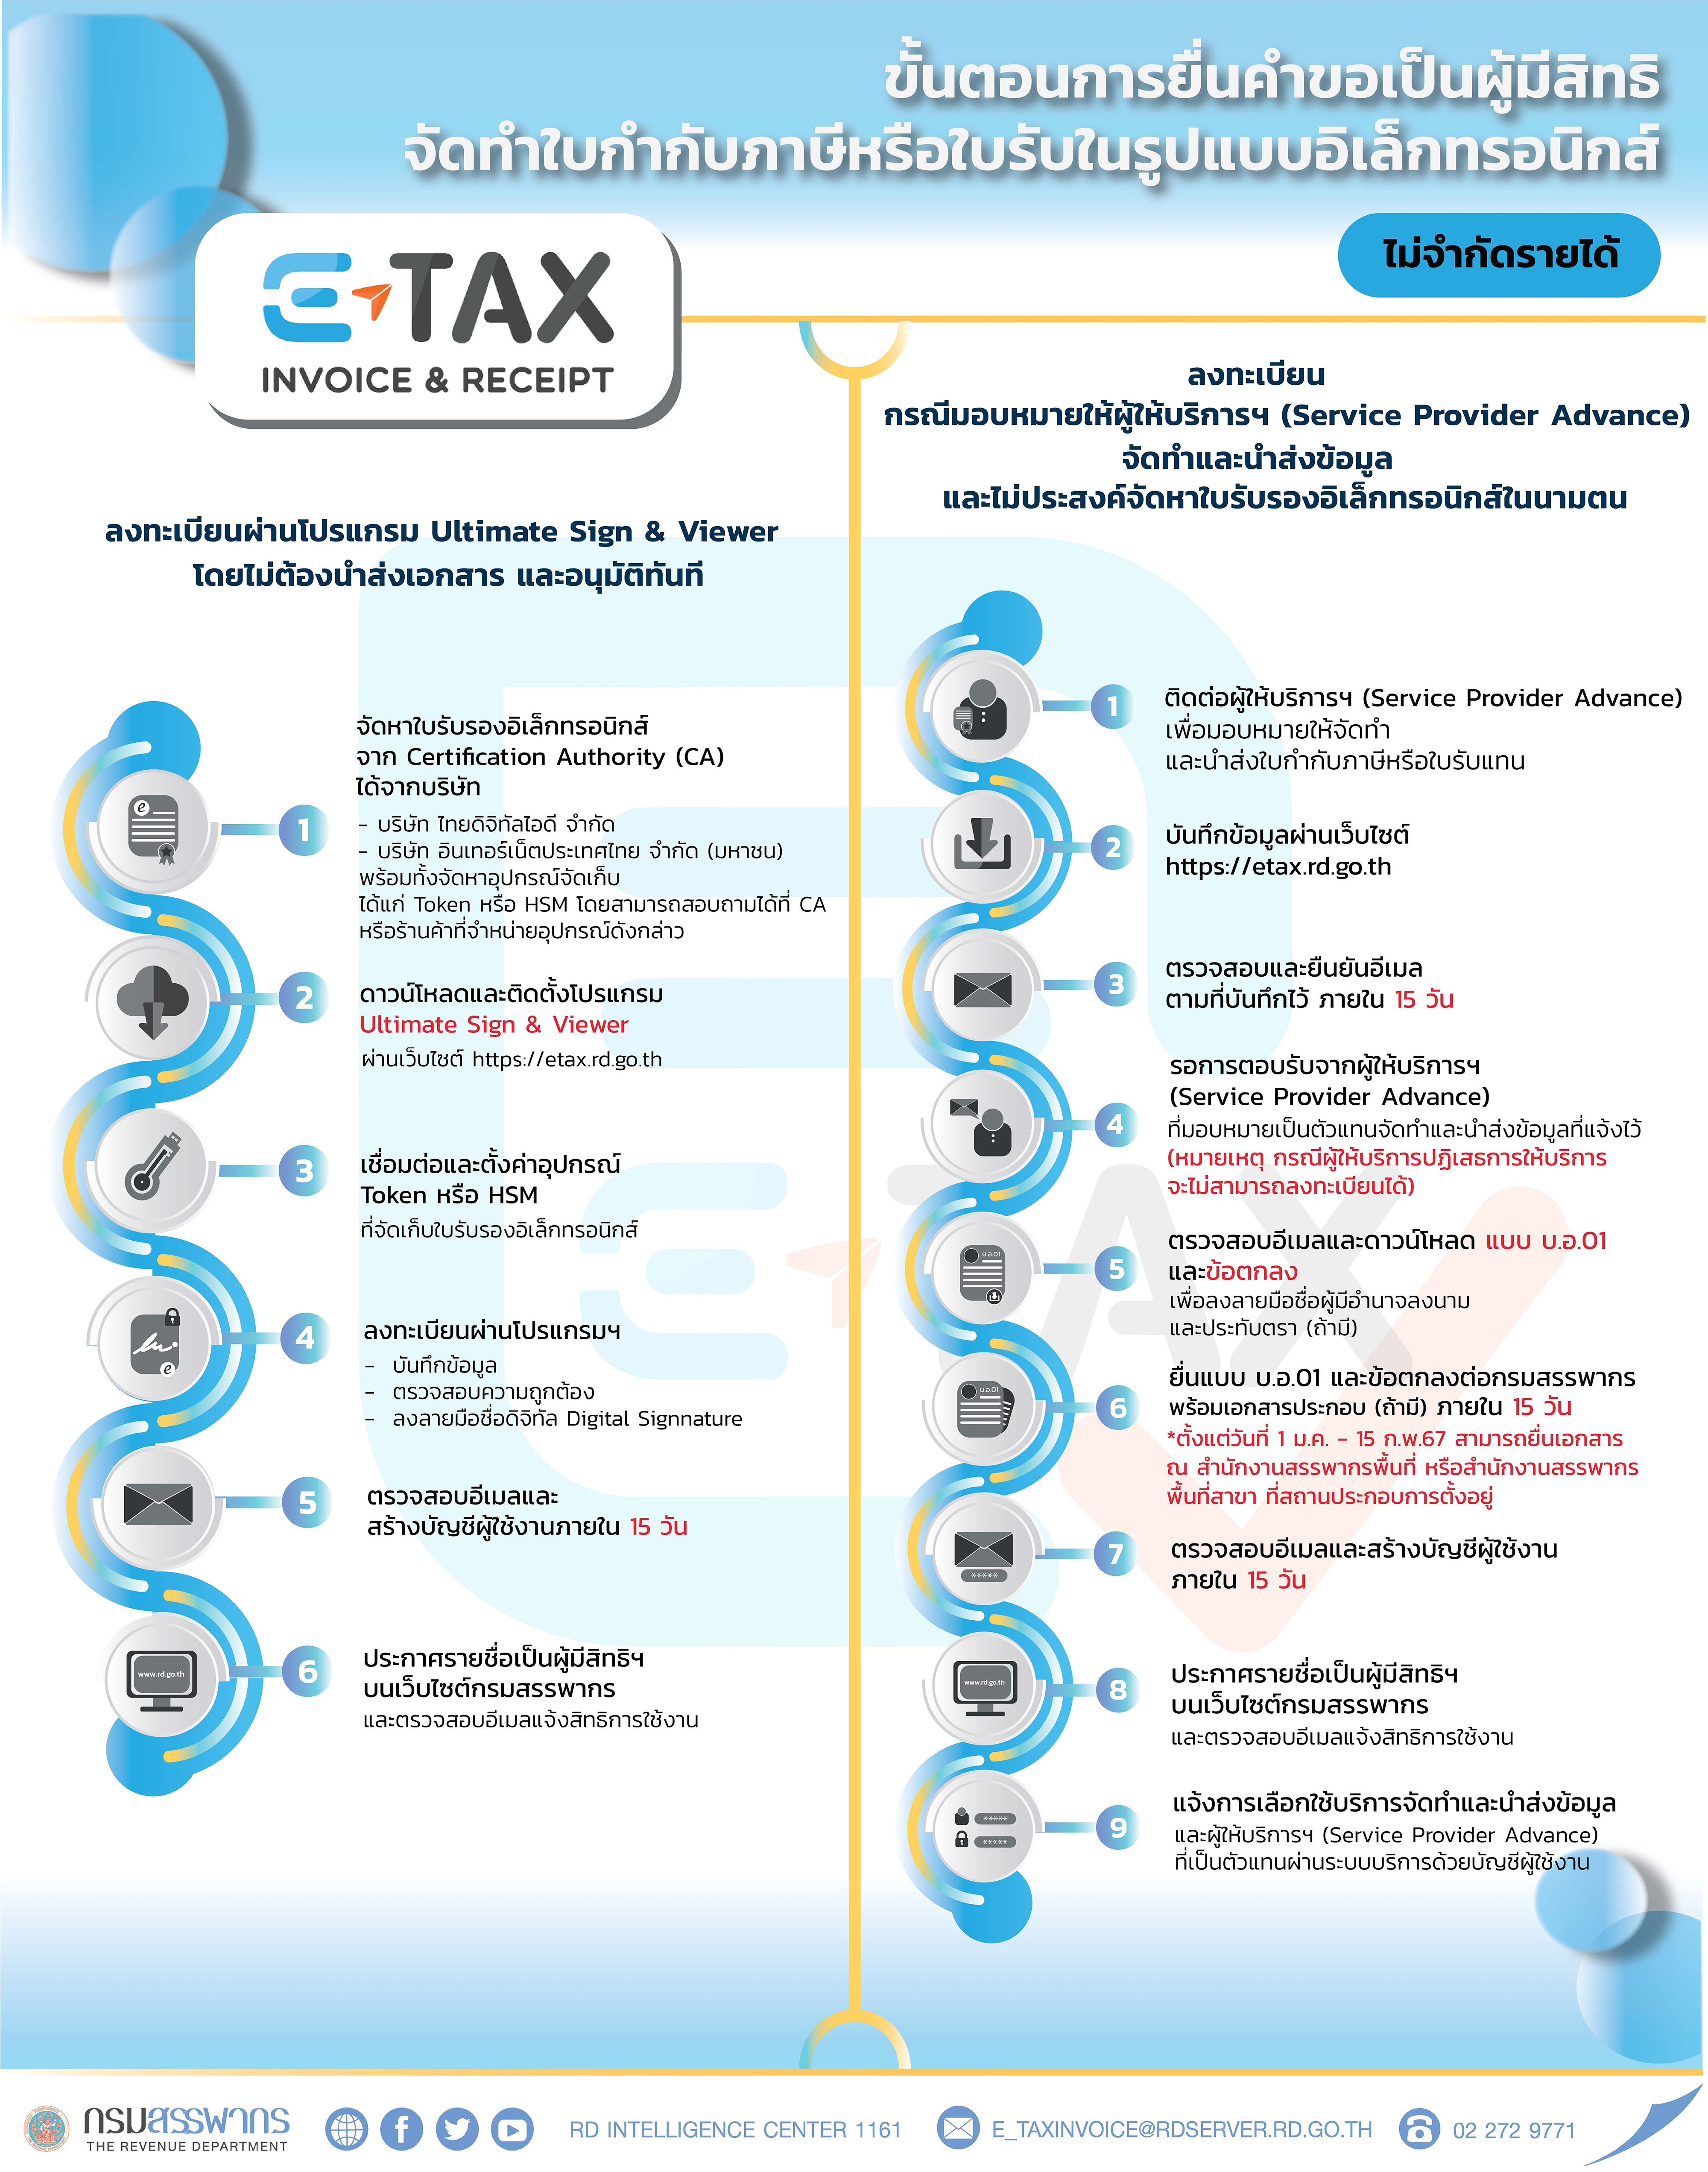 ขั้นตอนการยื่นคำขอเป็นผู้มีสิทธิจัดทำใบกำกับภาษีหรือใบรับในรูปแบบอิเล็กทรอนิกส์ (e-Tax Invoice & e-Receipt และ e-Tax Invoice by Time stamp)